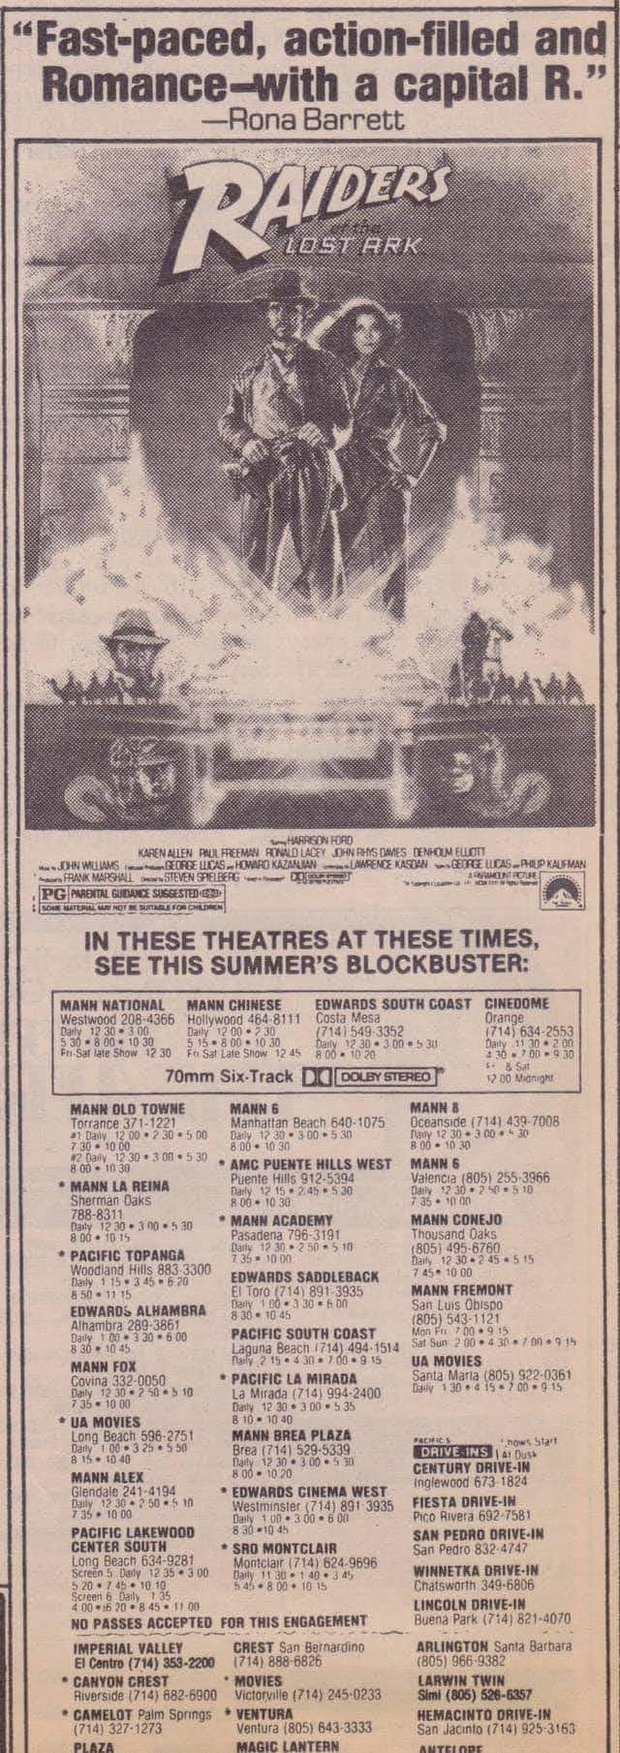 Indiana Jones y el arca perdida. Anuncio original de 1981 del periodico Los Angeles Times.